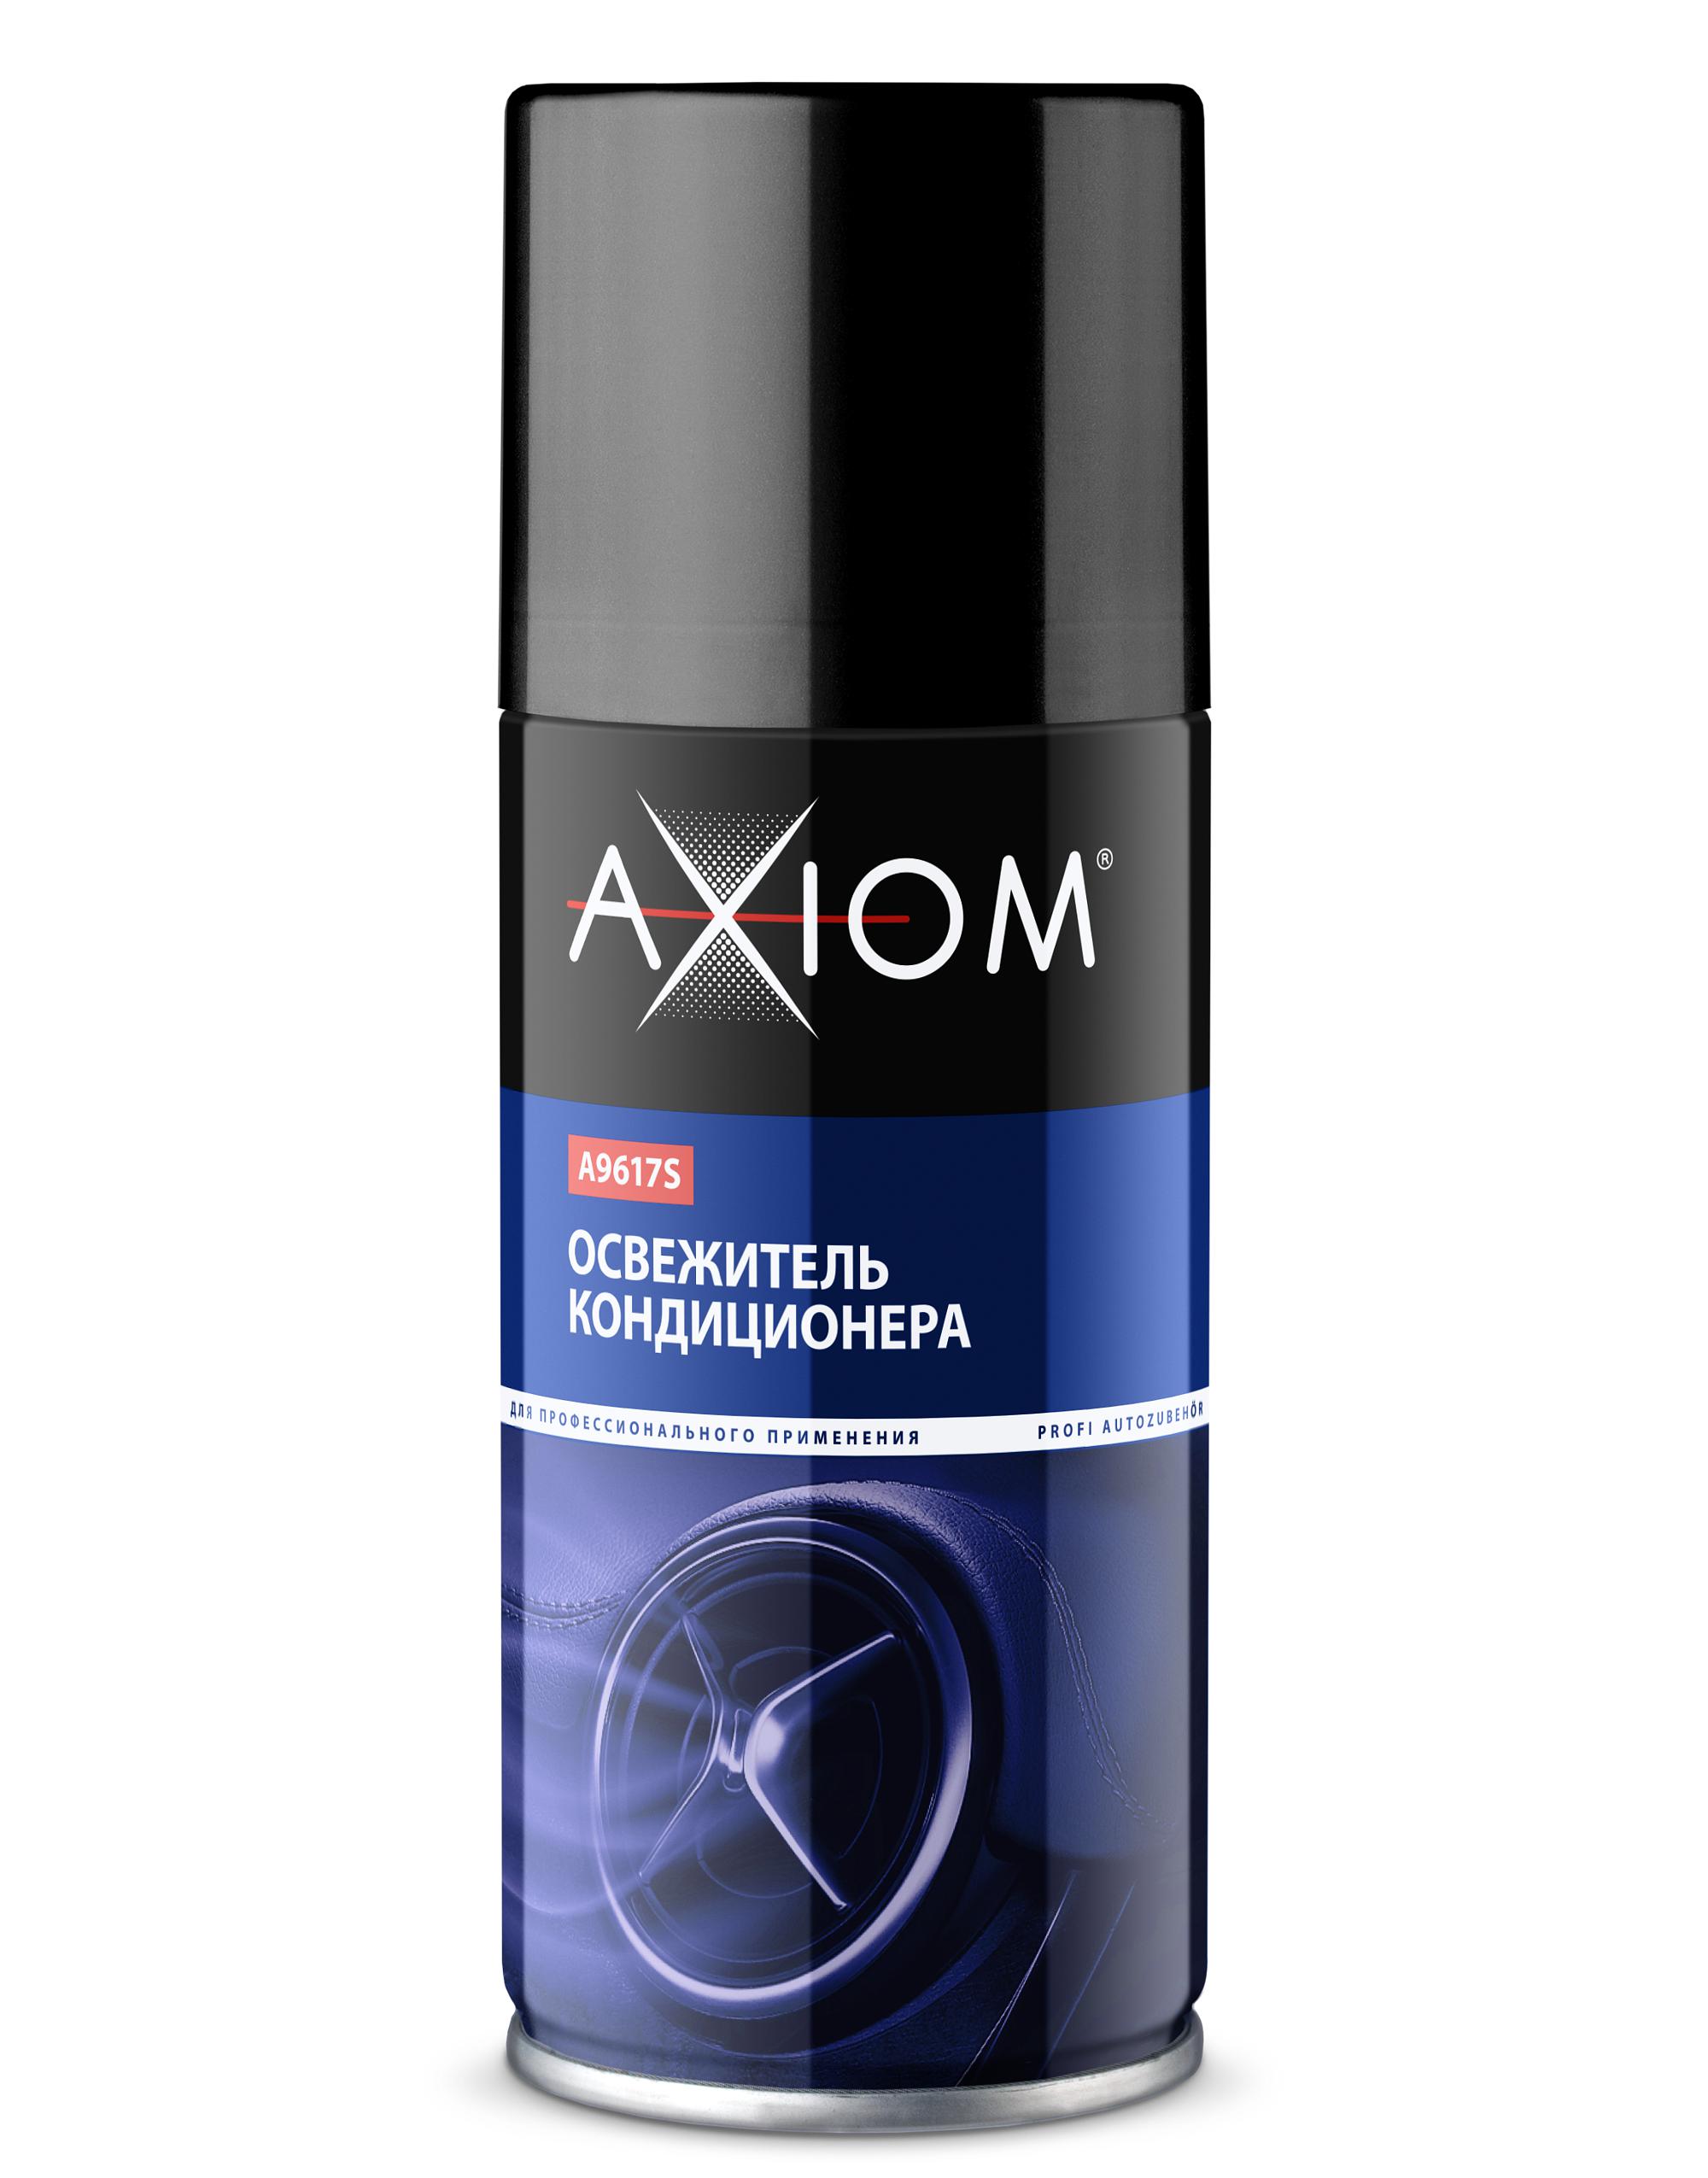 Освежитель кондиционера AXIOM ликвидатор запахов 210мл